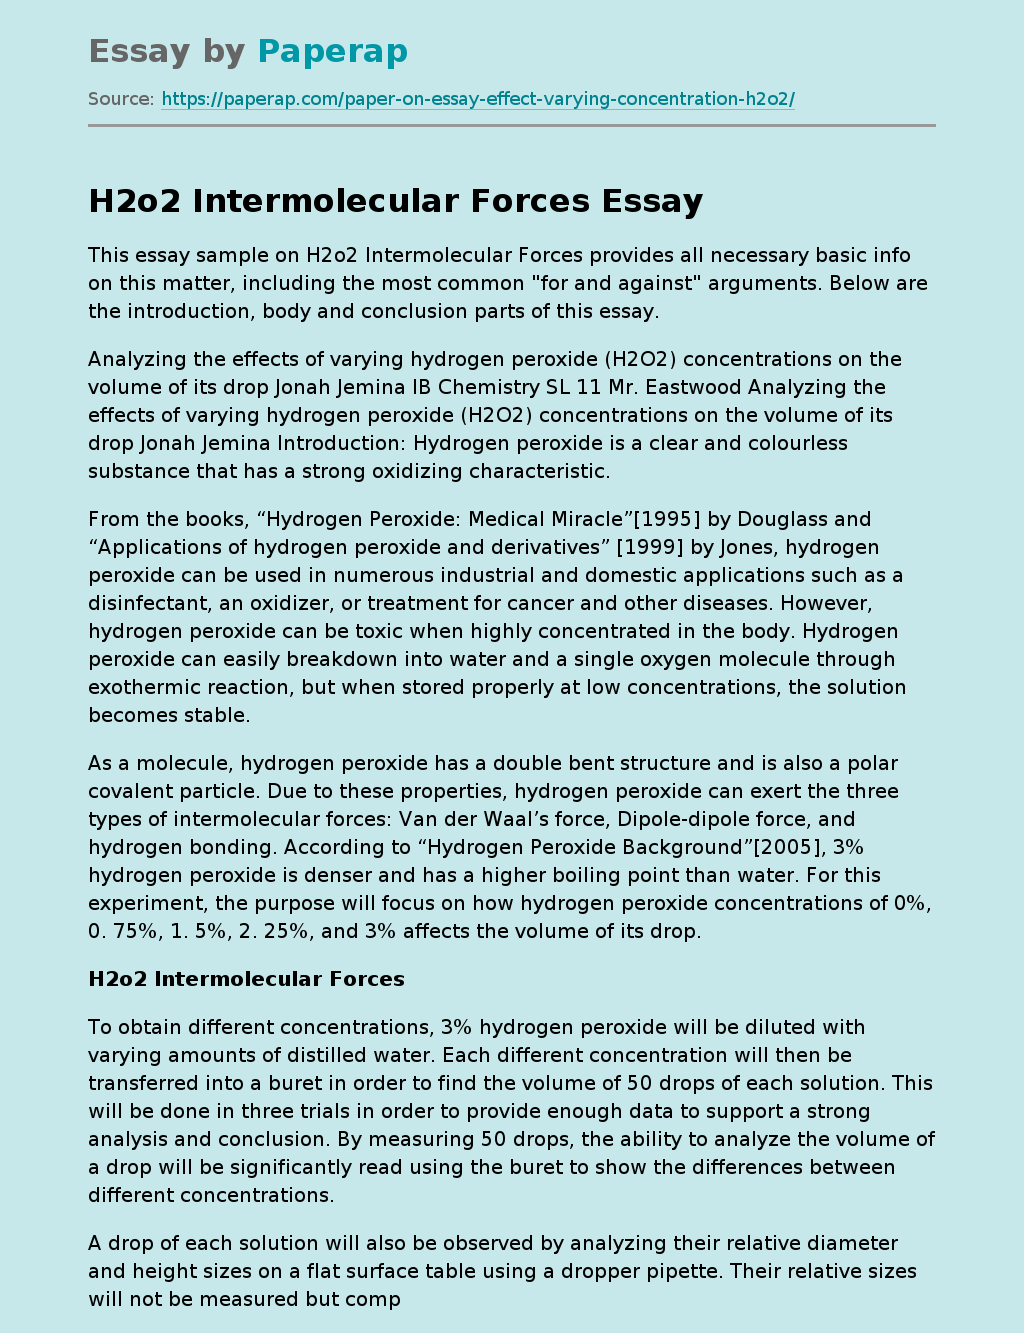 H2o2 Intermolecular Forces